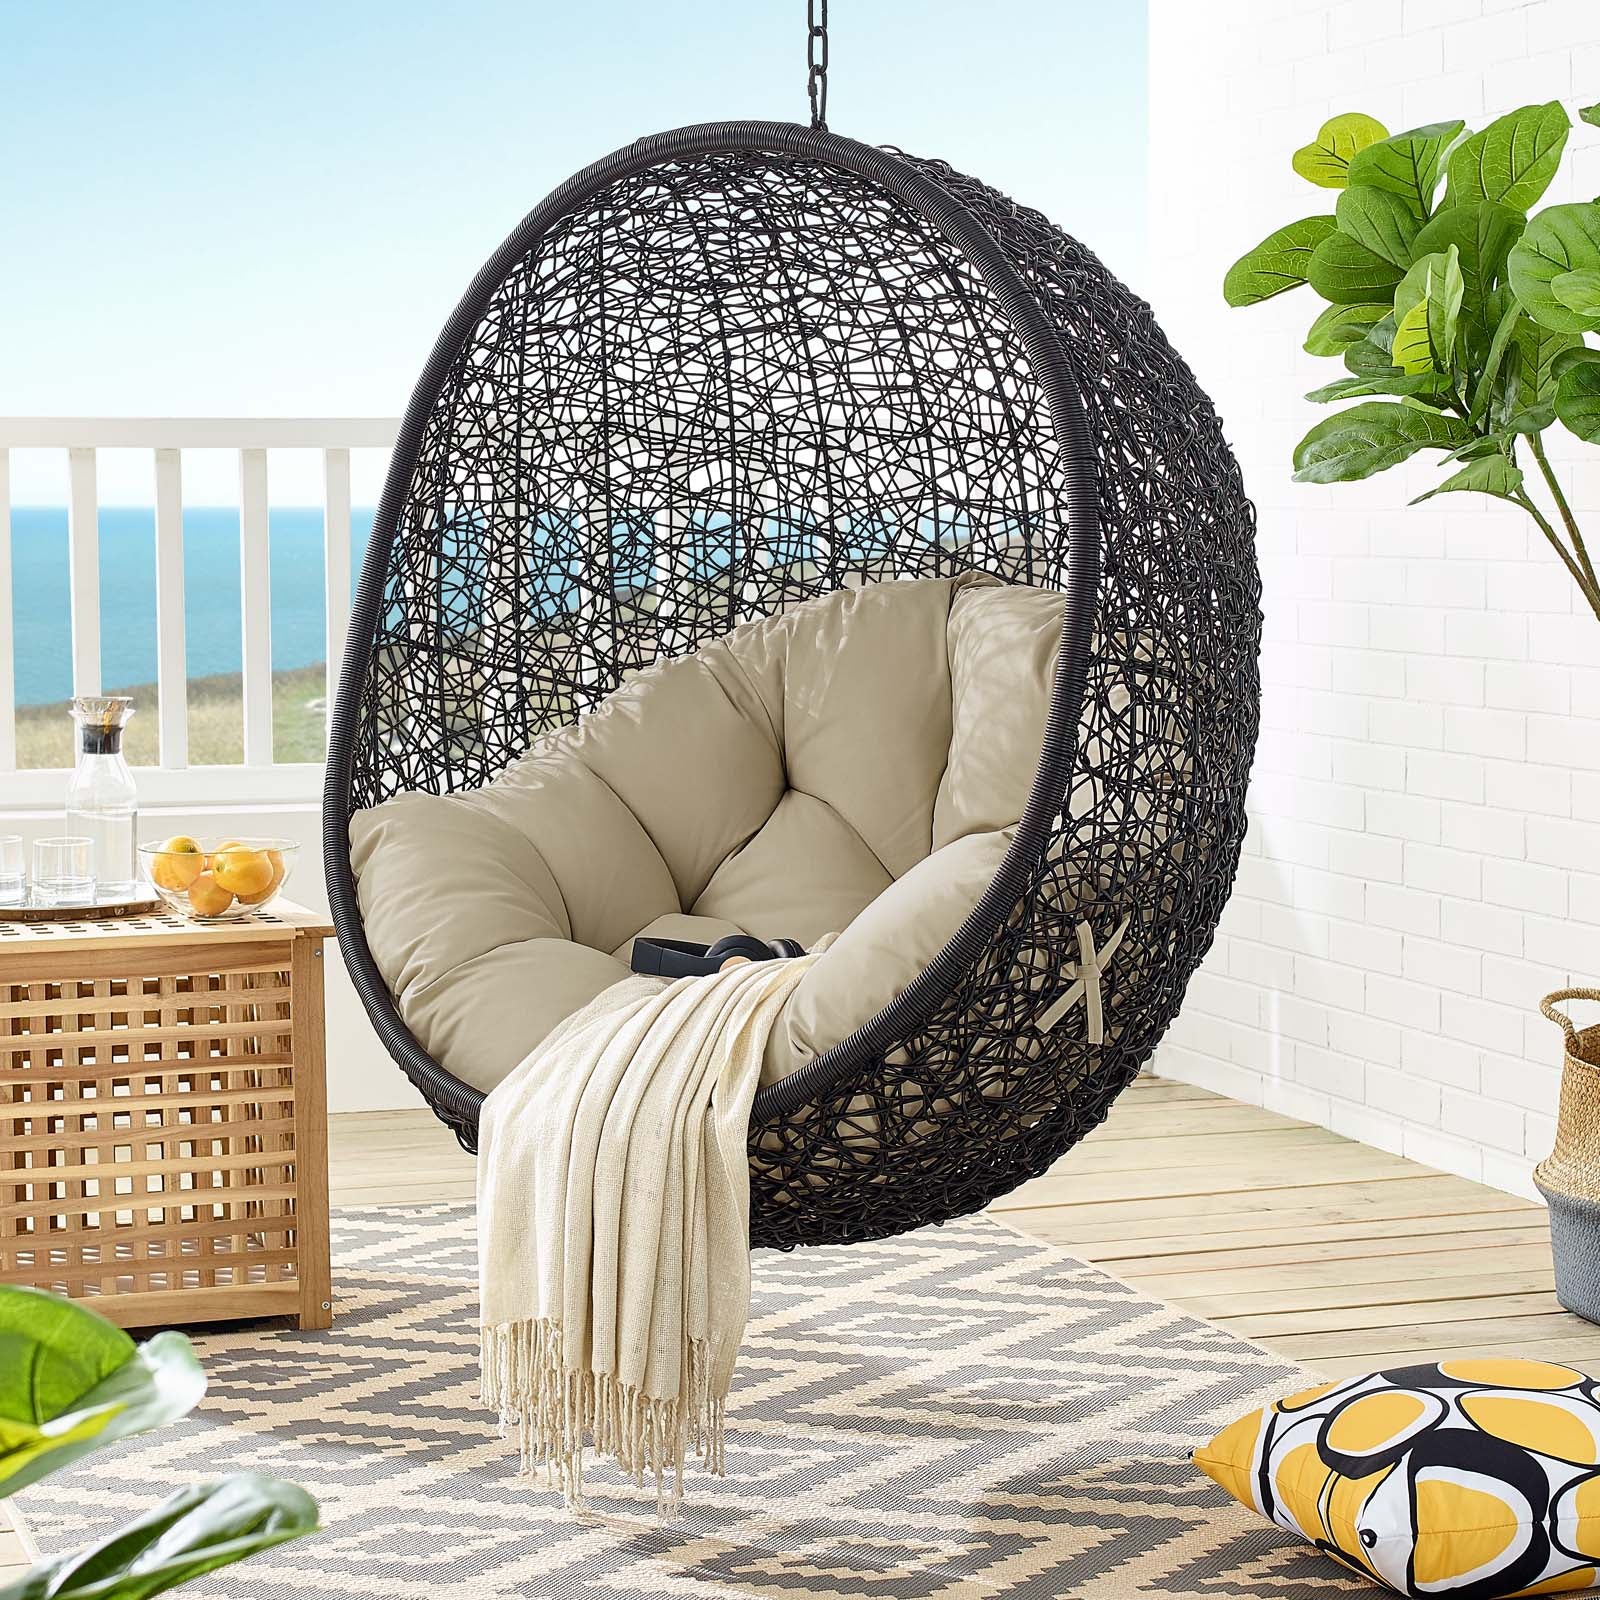 Modway Outdoor Swings - Encase Sunbrella Swing Outdoor Patio Lounge Chair Black Beige